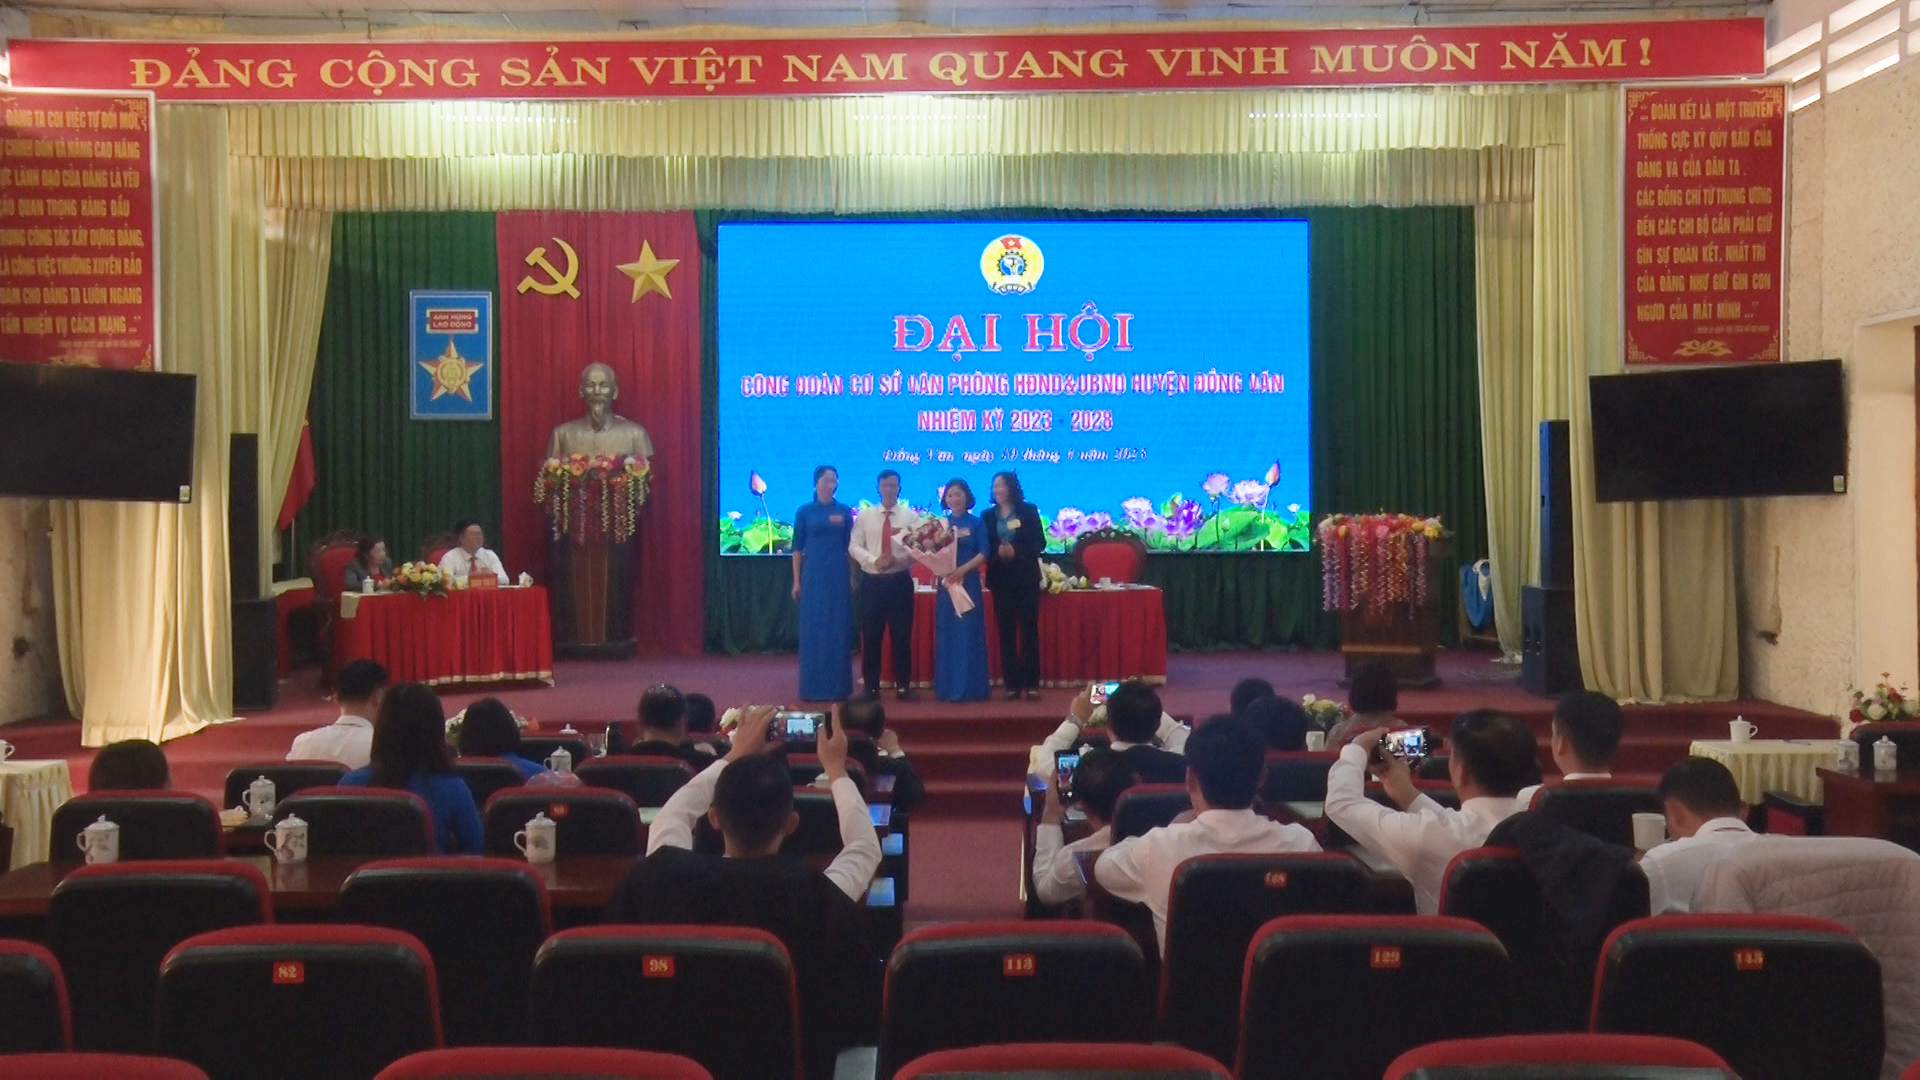 Đại hội công đoàn cơ sở văn phòng HĐND và UBND huyện Đồng Văn